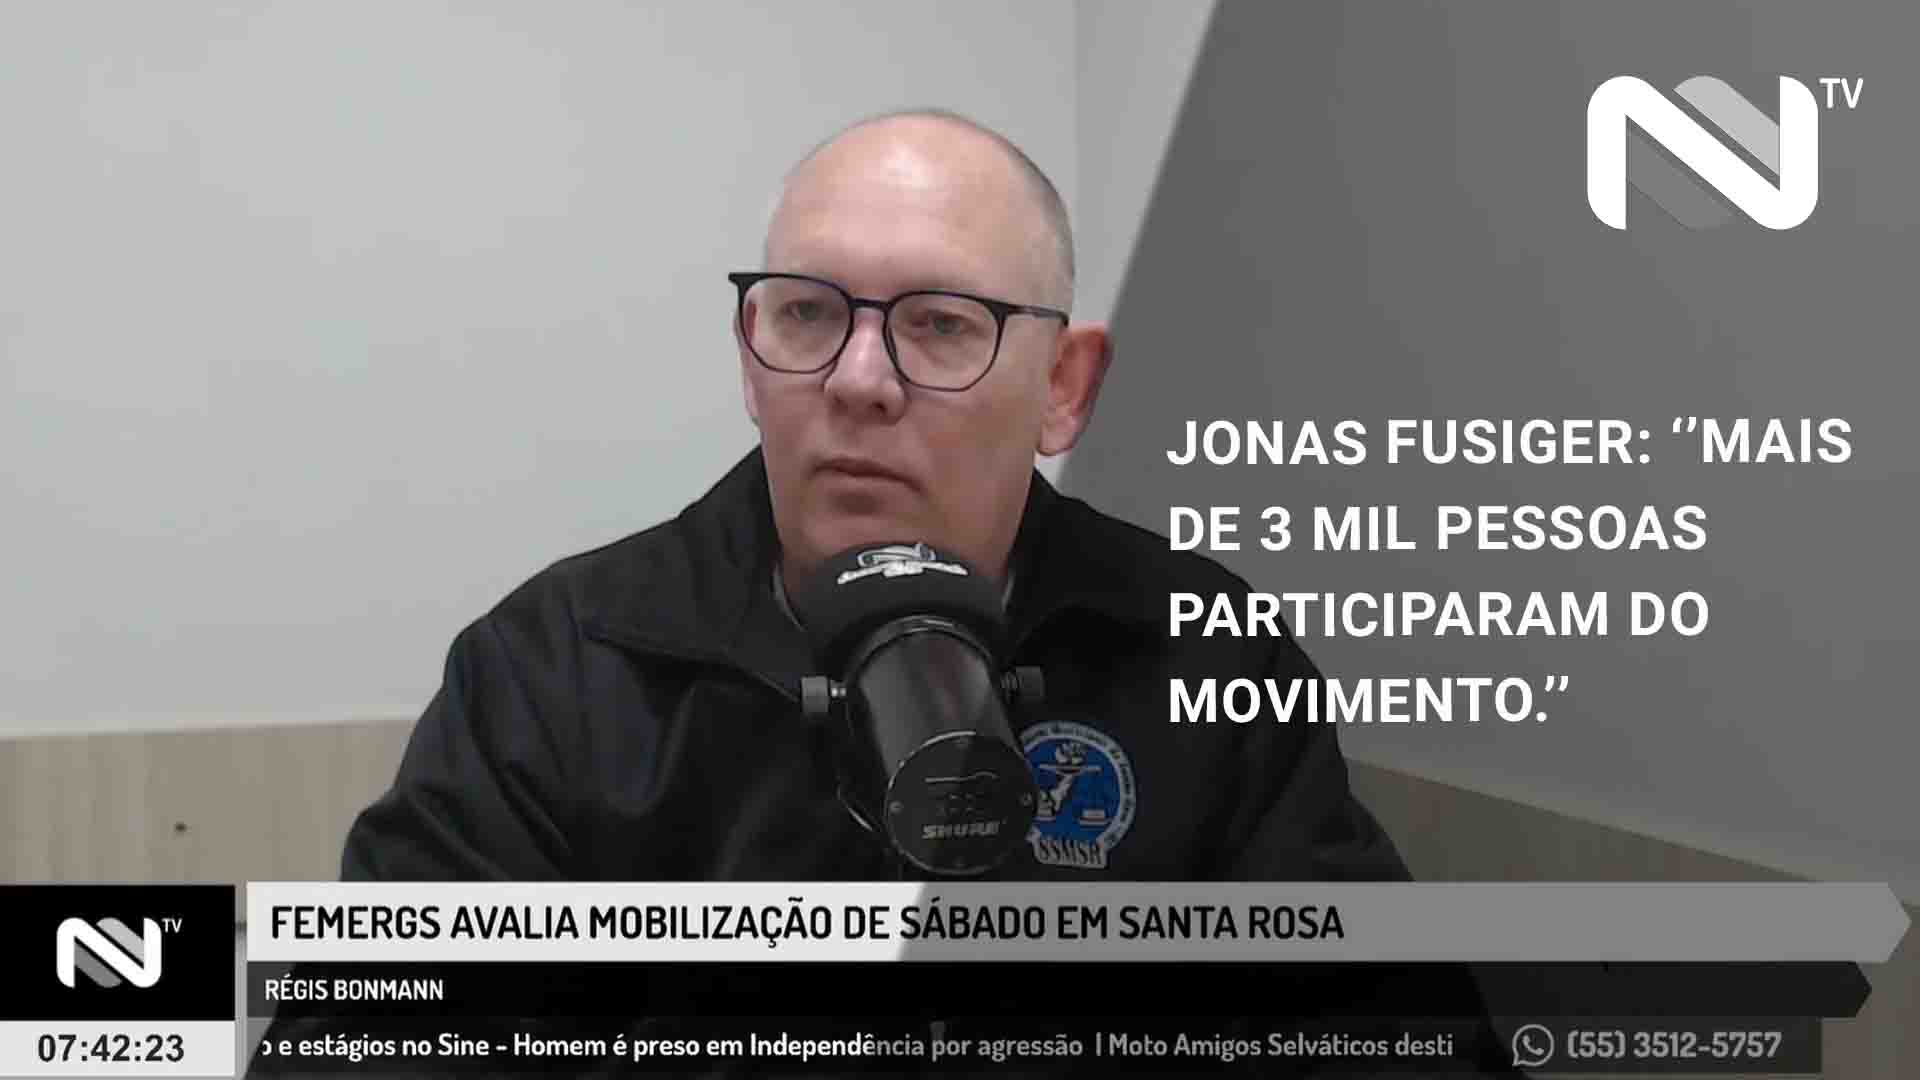 FEMERGS avalia mobilização do último sábado em Santa Rosa